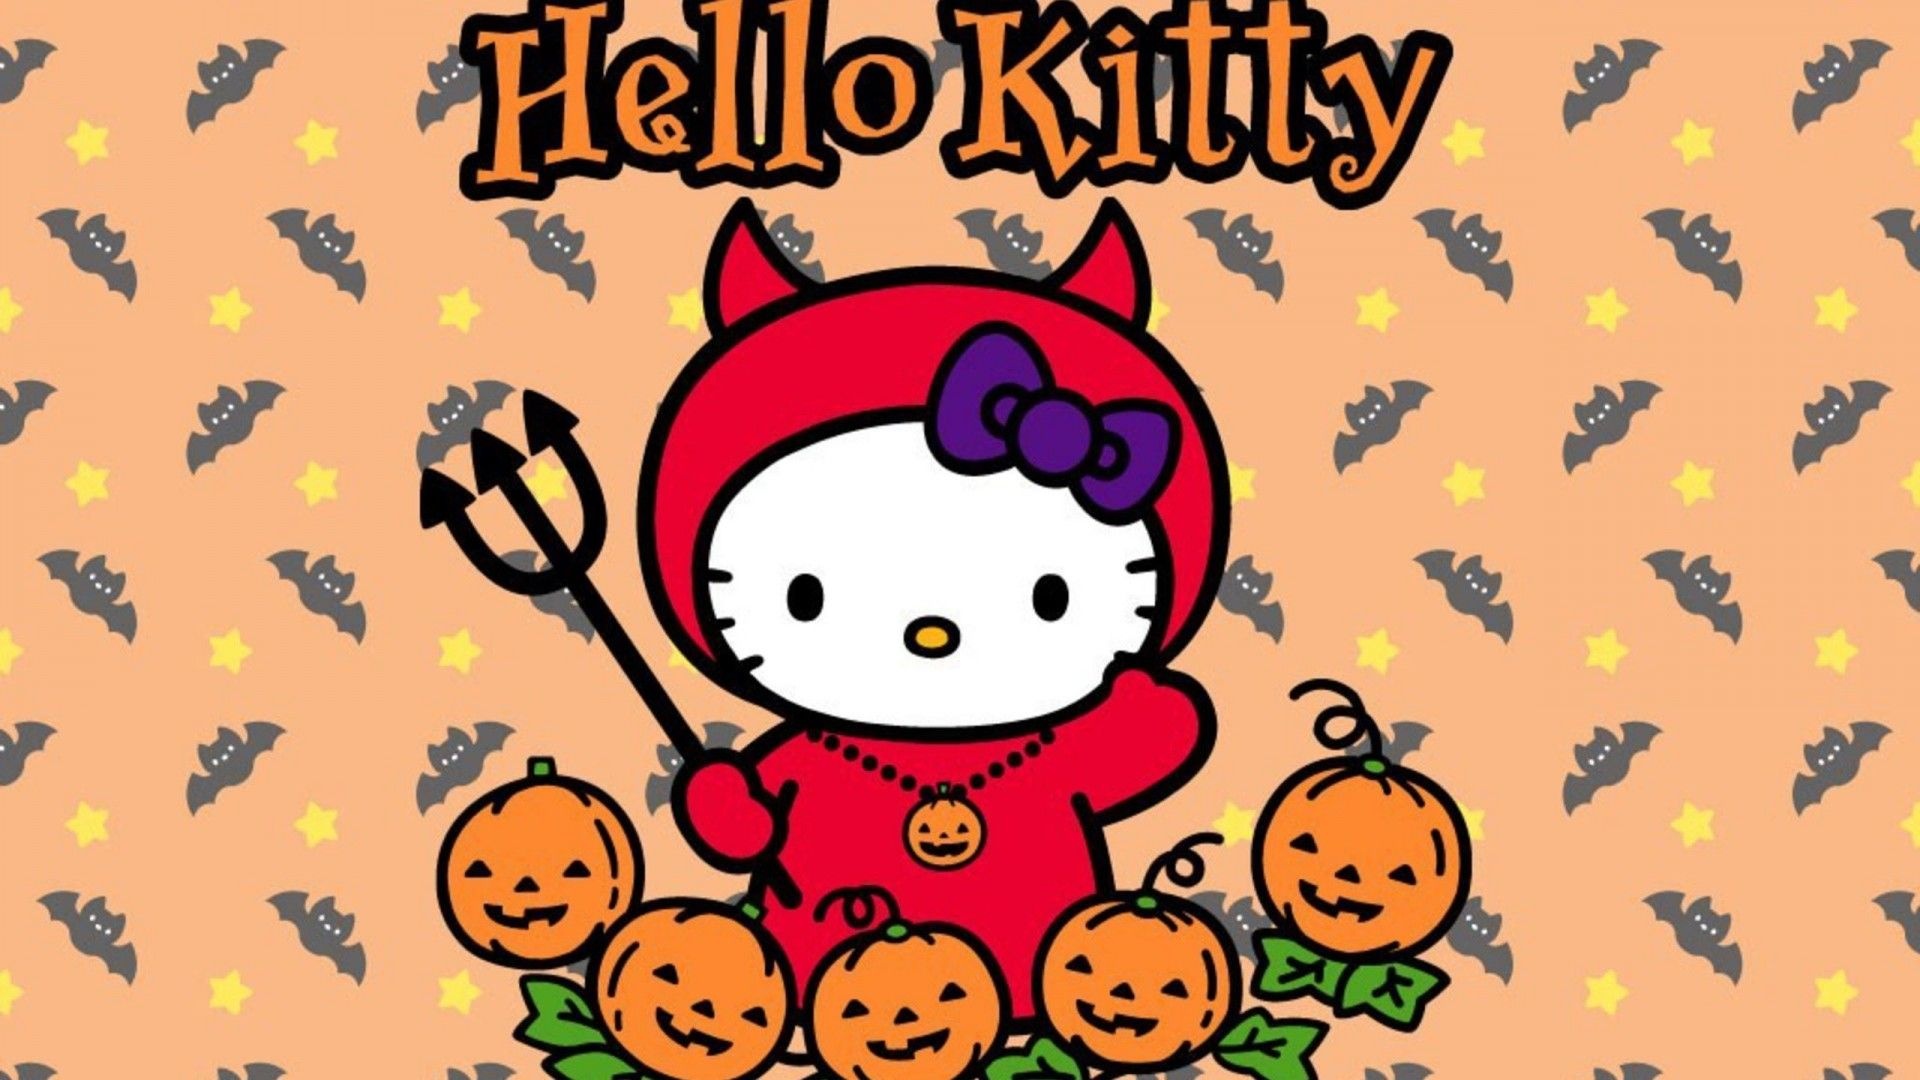 Hello Kitty Halloween, Spooky celebration, Cute frights, Festive fun, 1920x1080 Full HD Desktop